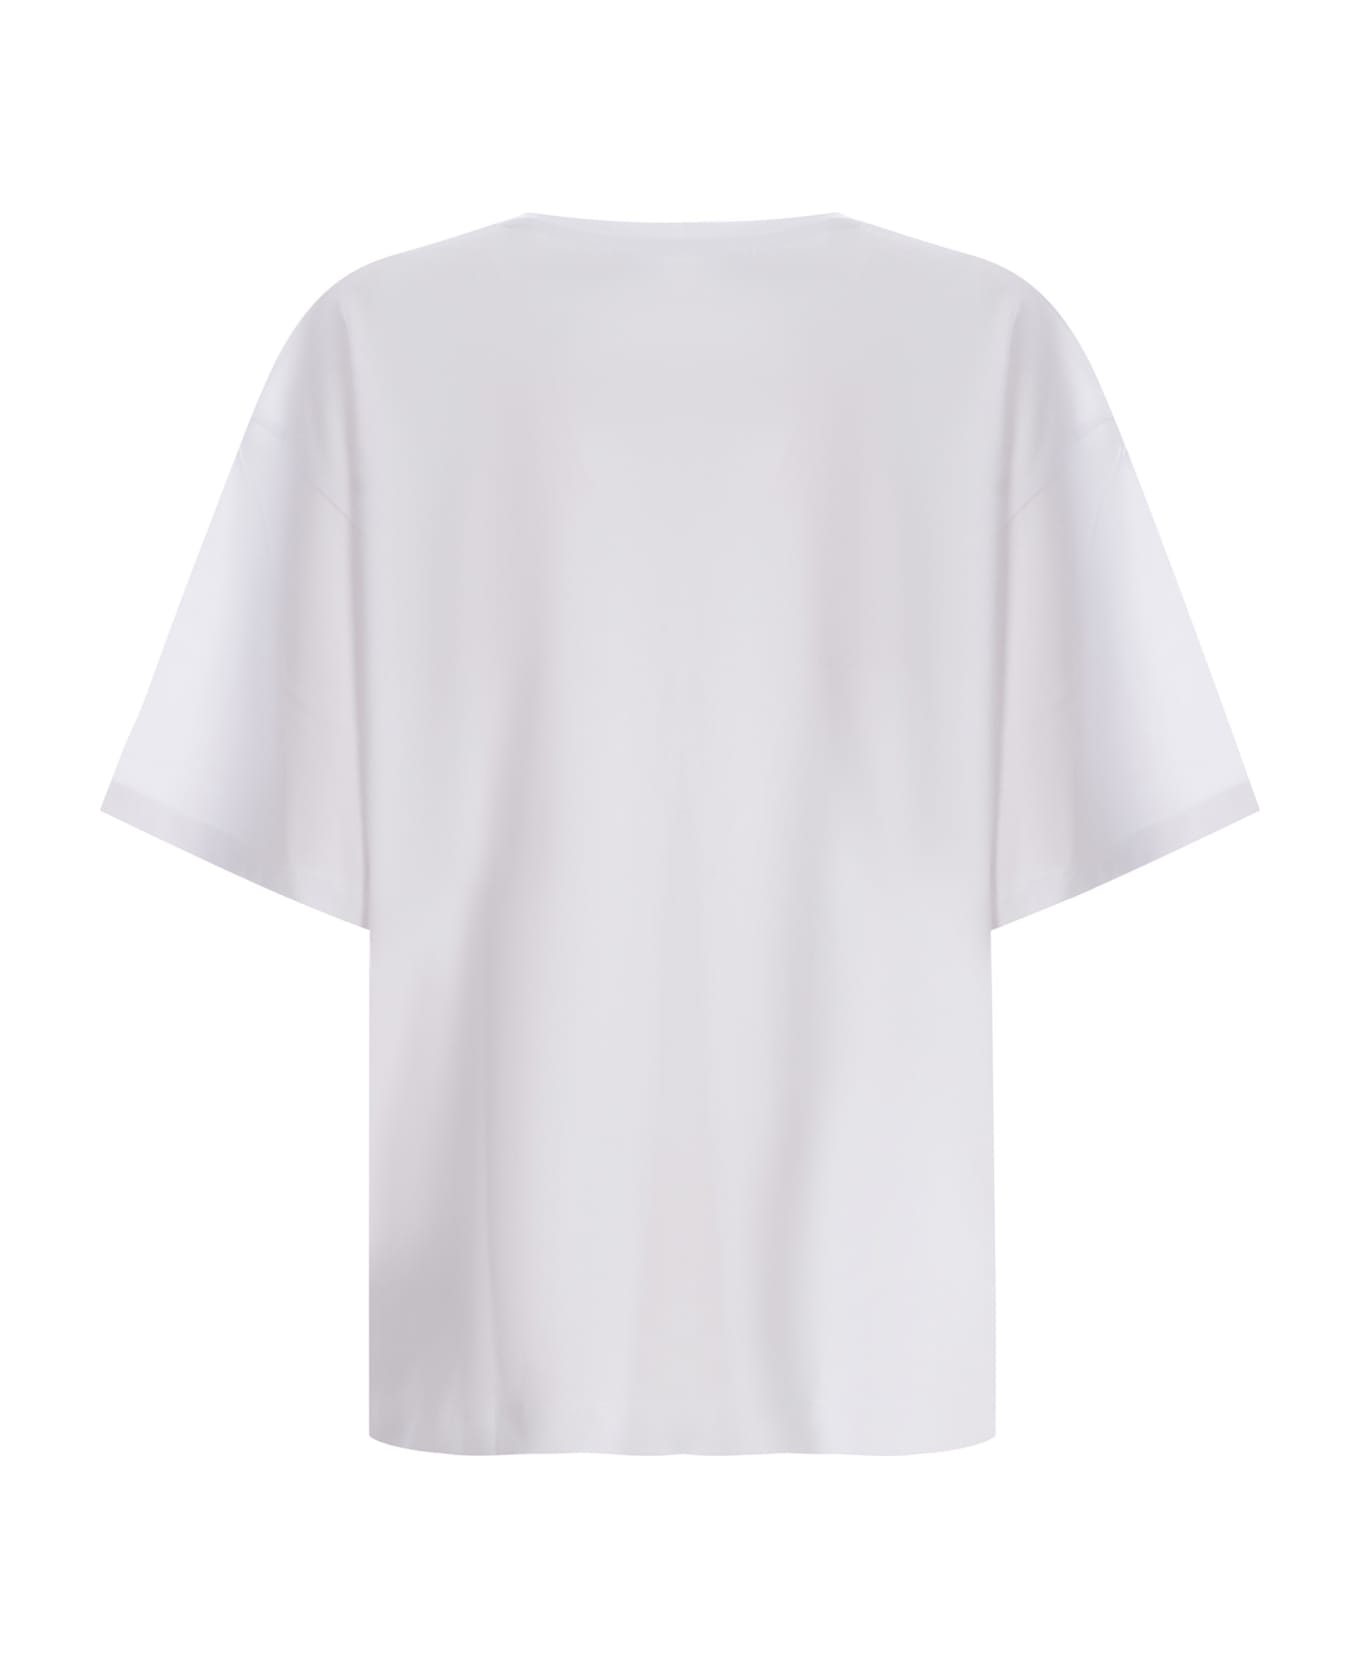 Fiorucci T-shirt Fiorucci "mouth" Made Of Cotton - Bianco Tシャツ